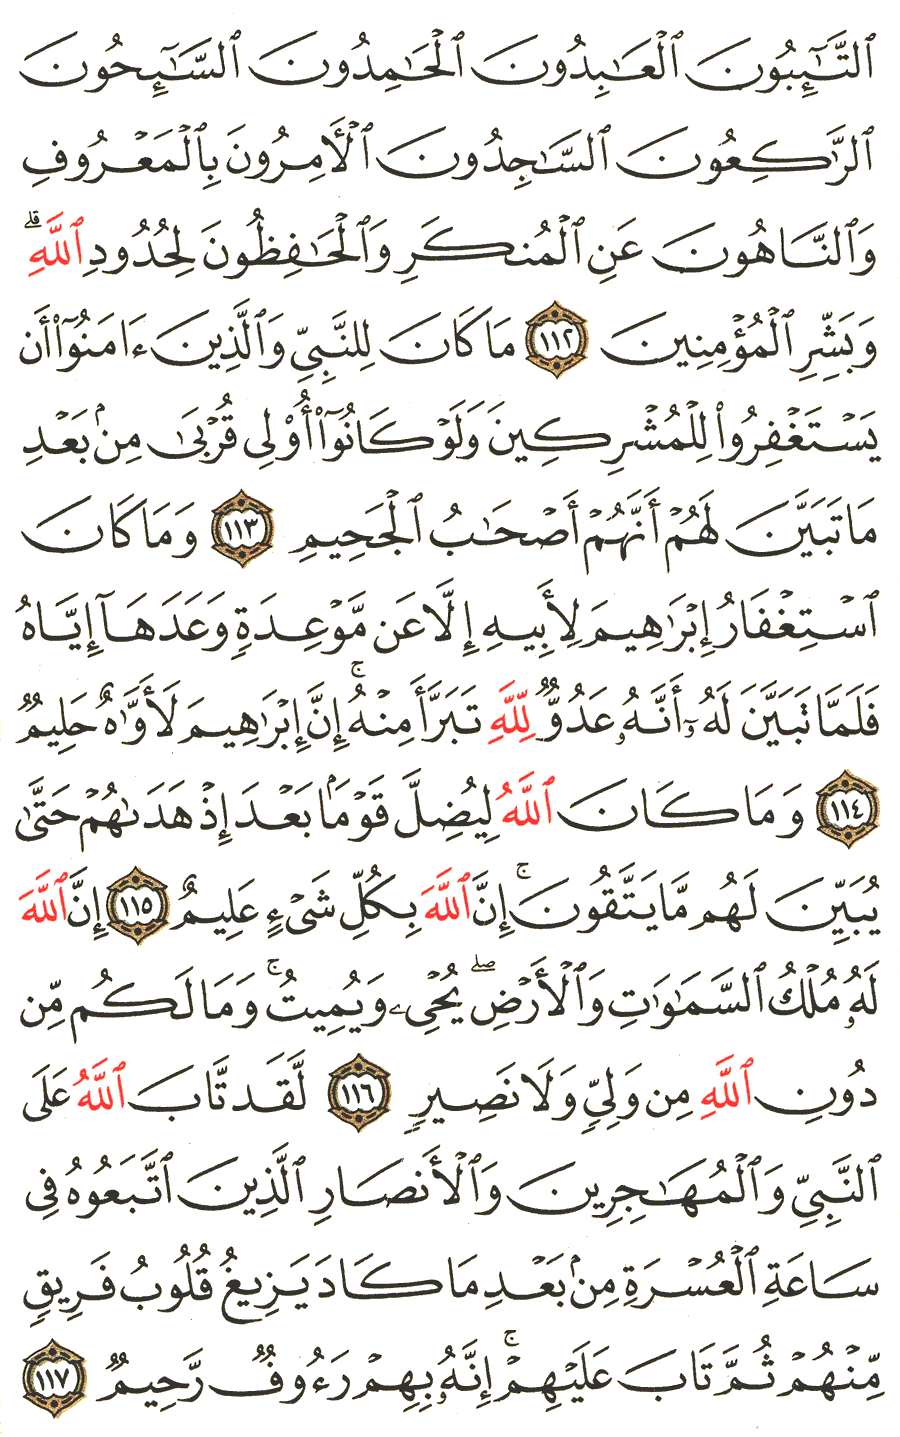 الصفحة 205 من القرآن الكريم